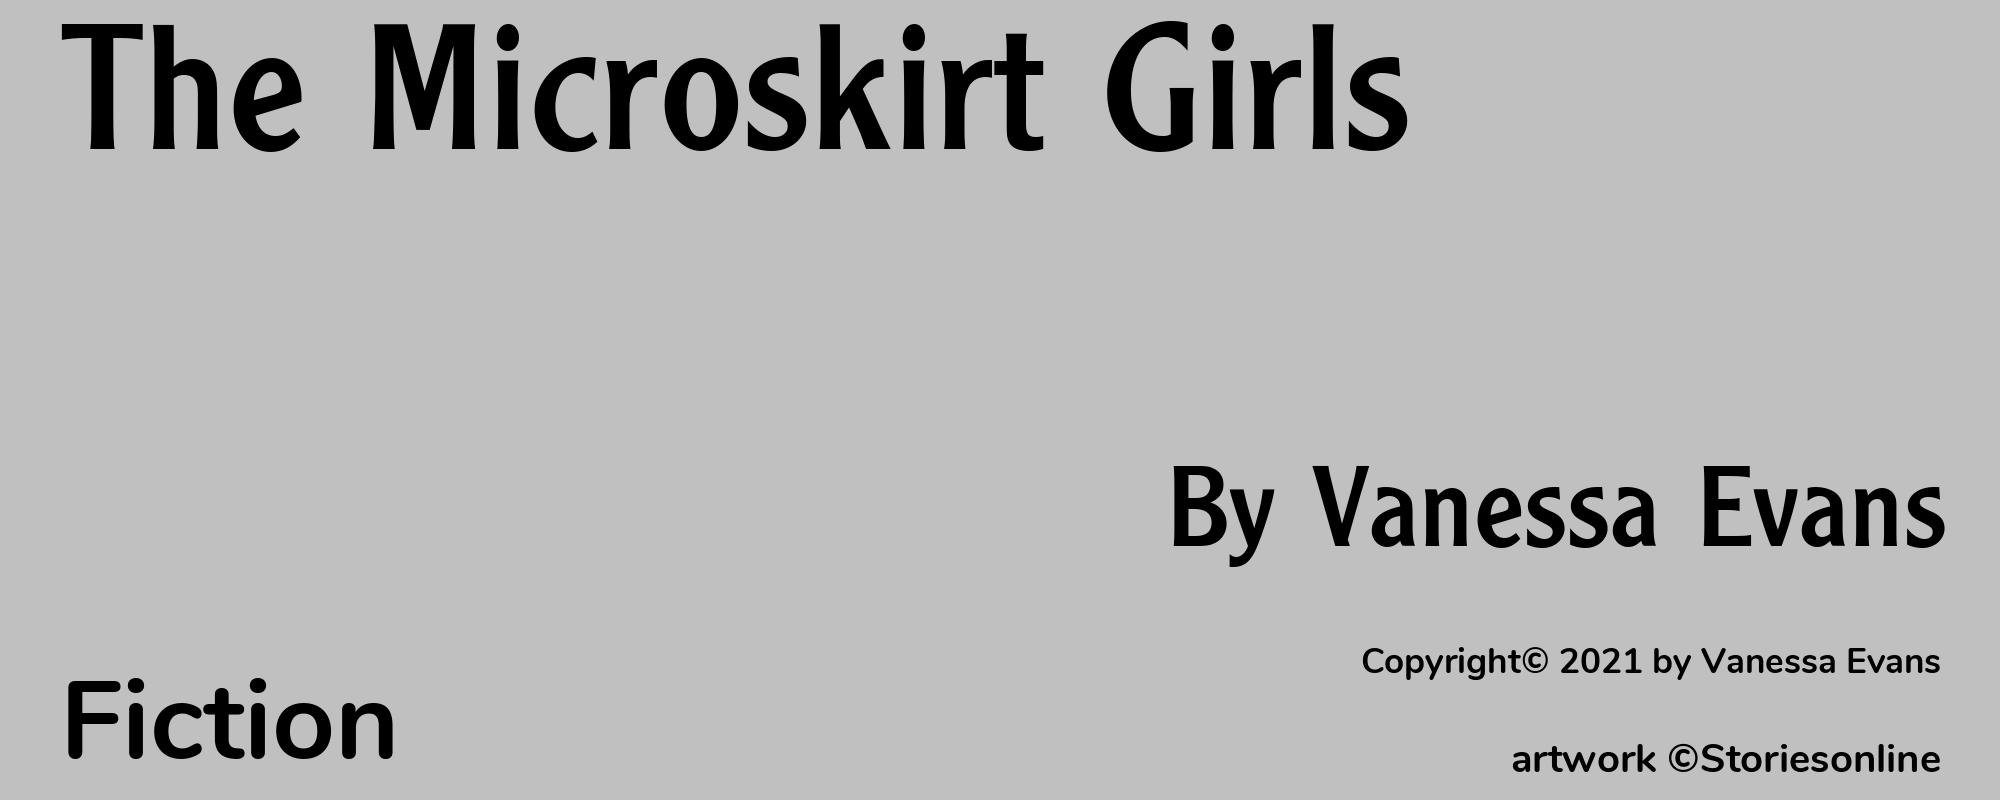 The Microskirt Girls - Cover